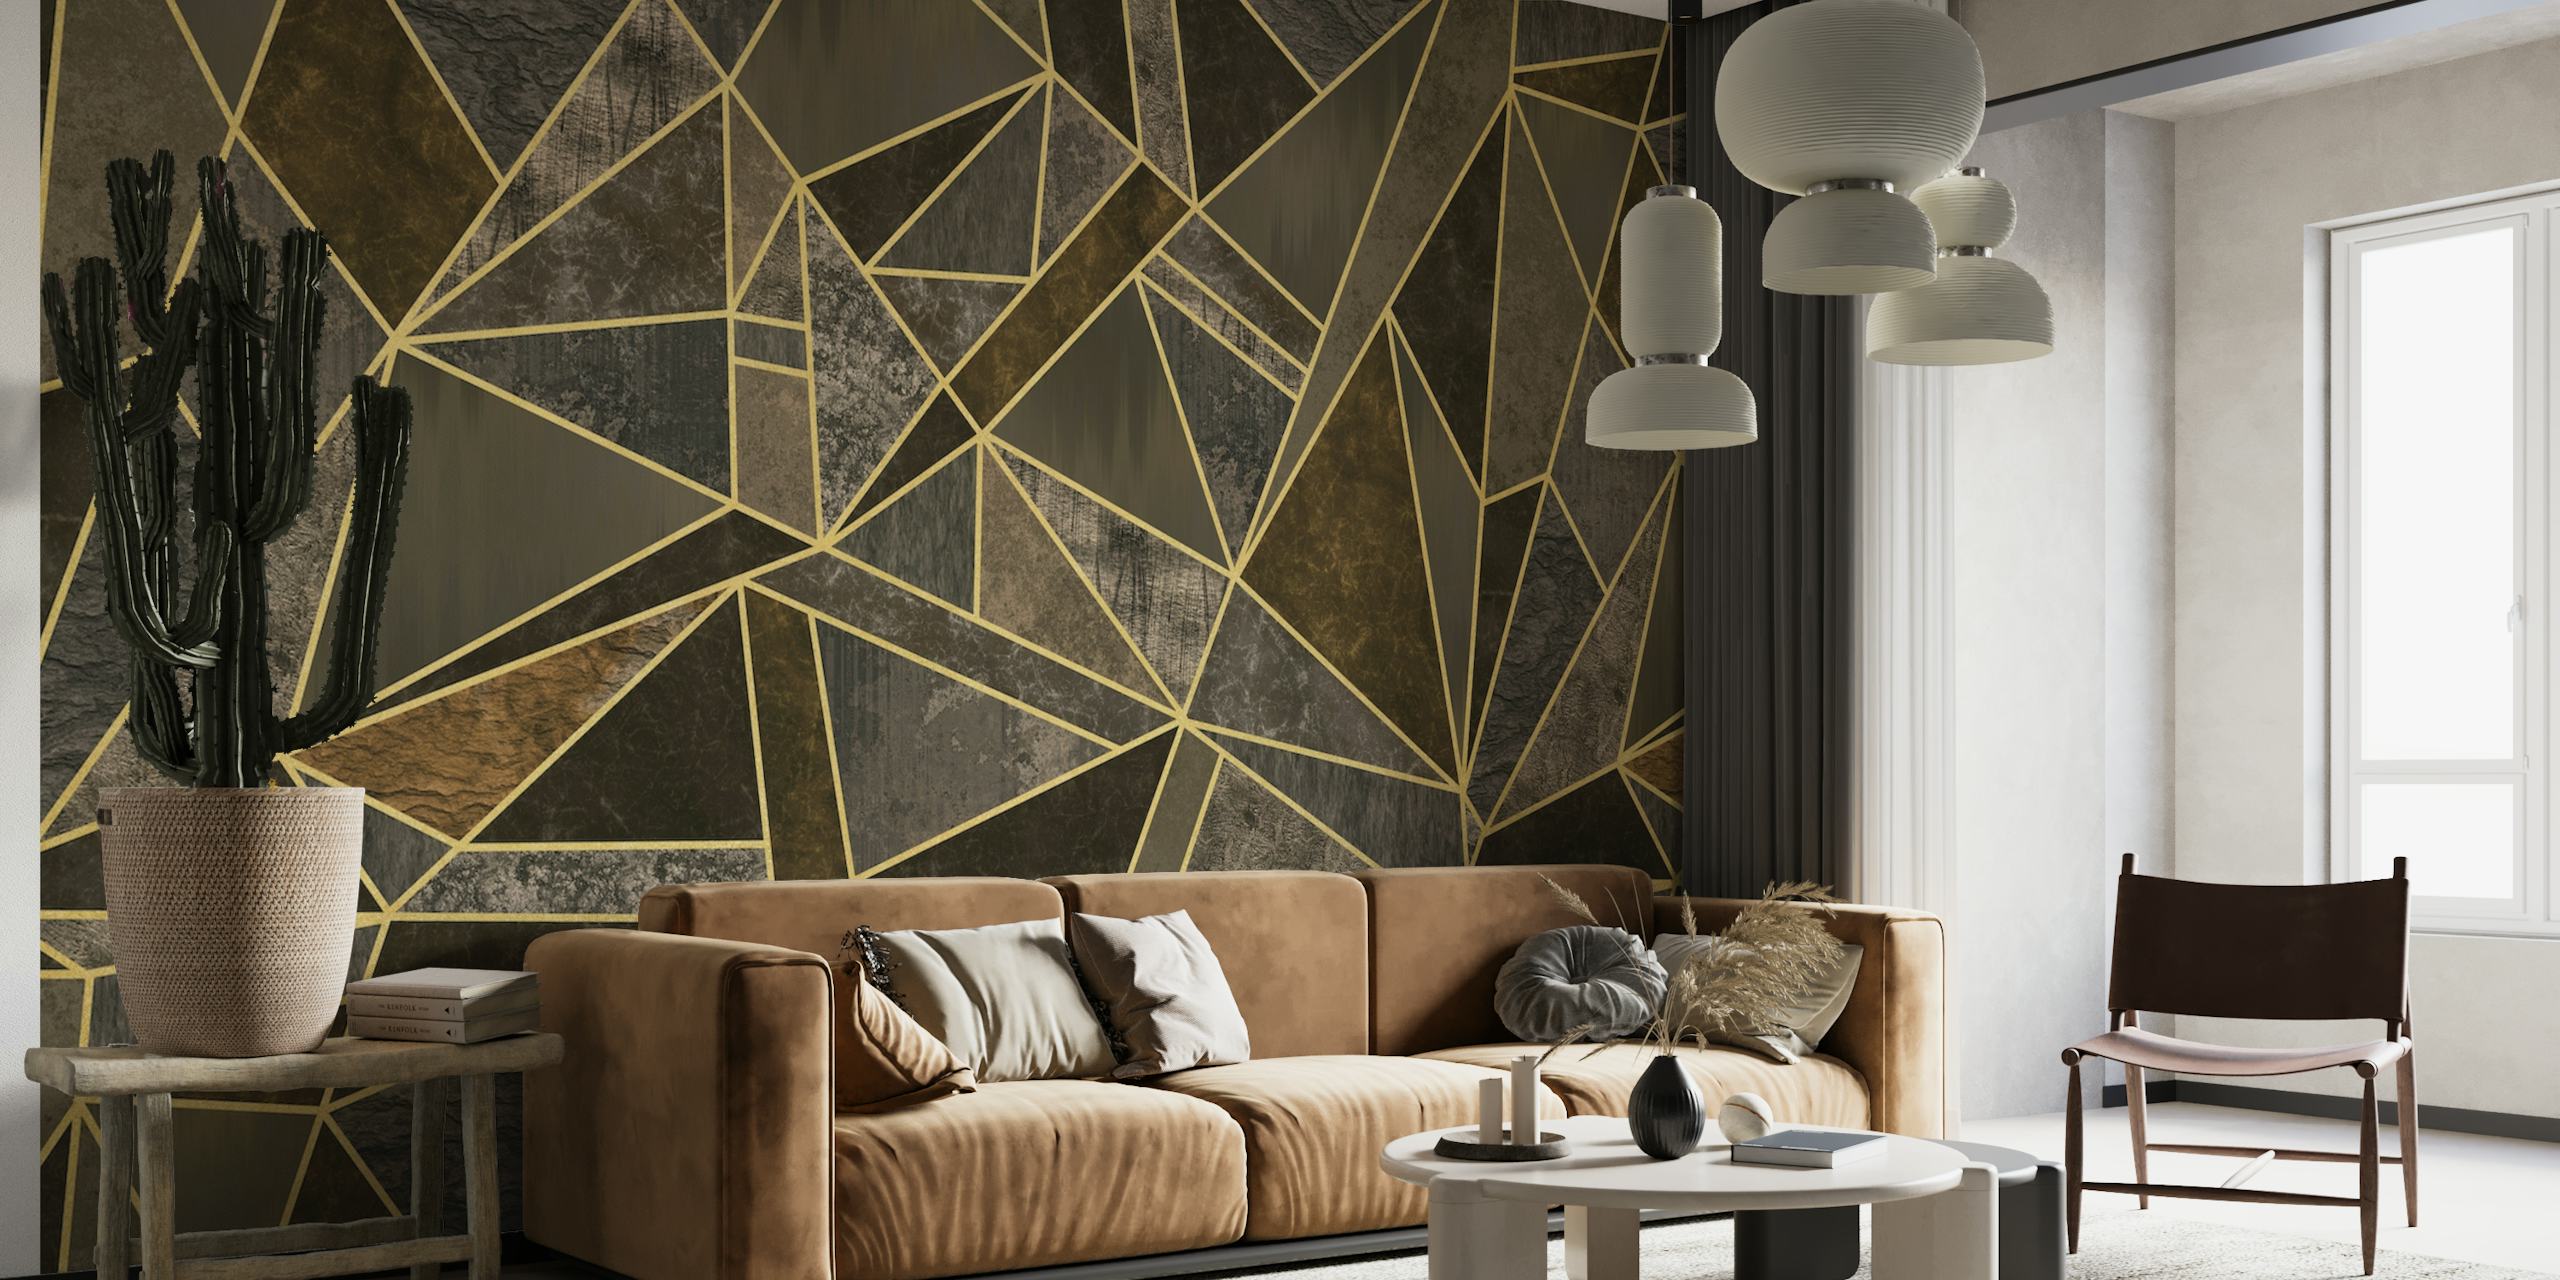 Lujoso mural de pared con patrón de mosaico geométrico en marrón y dorado